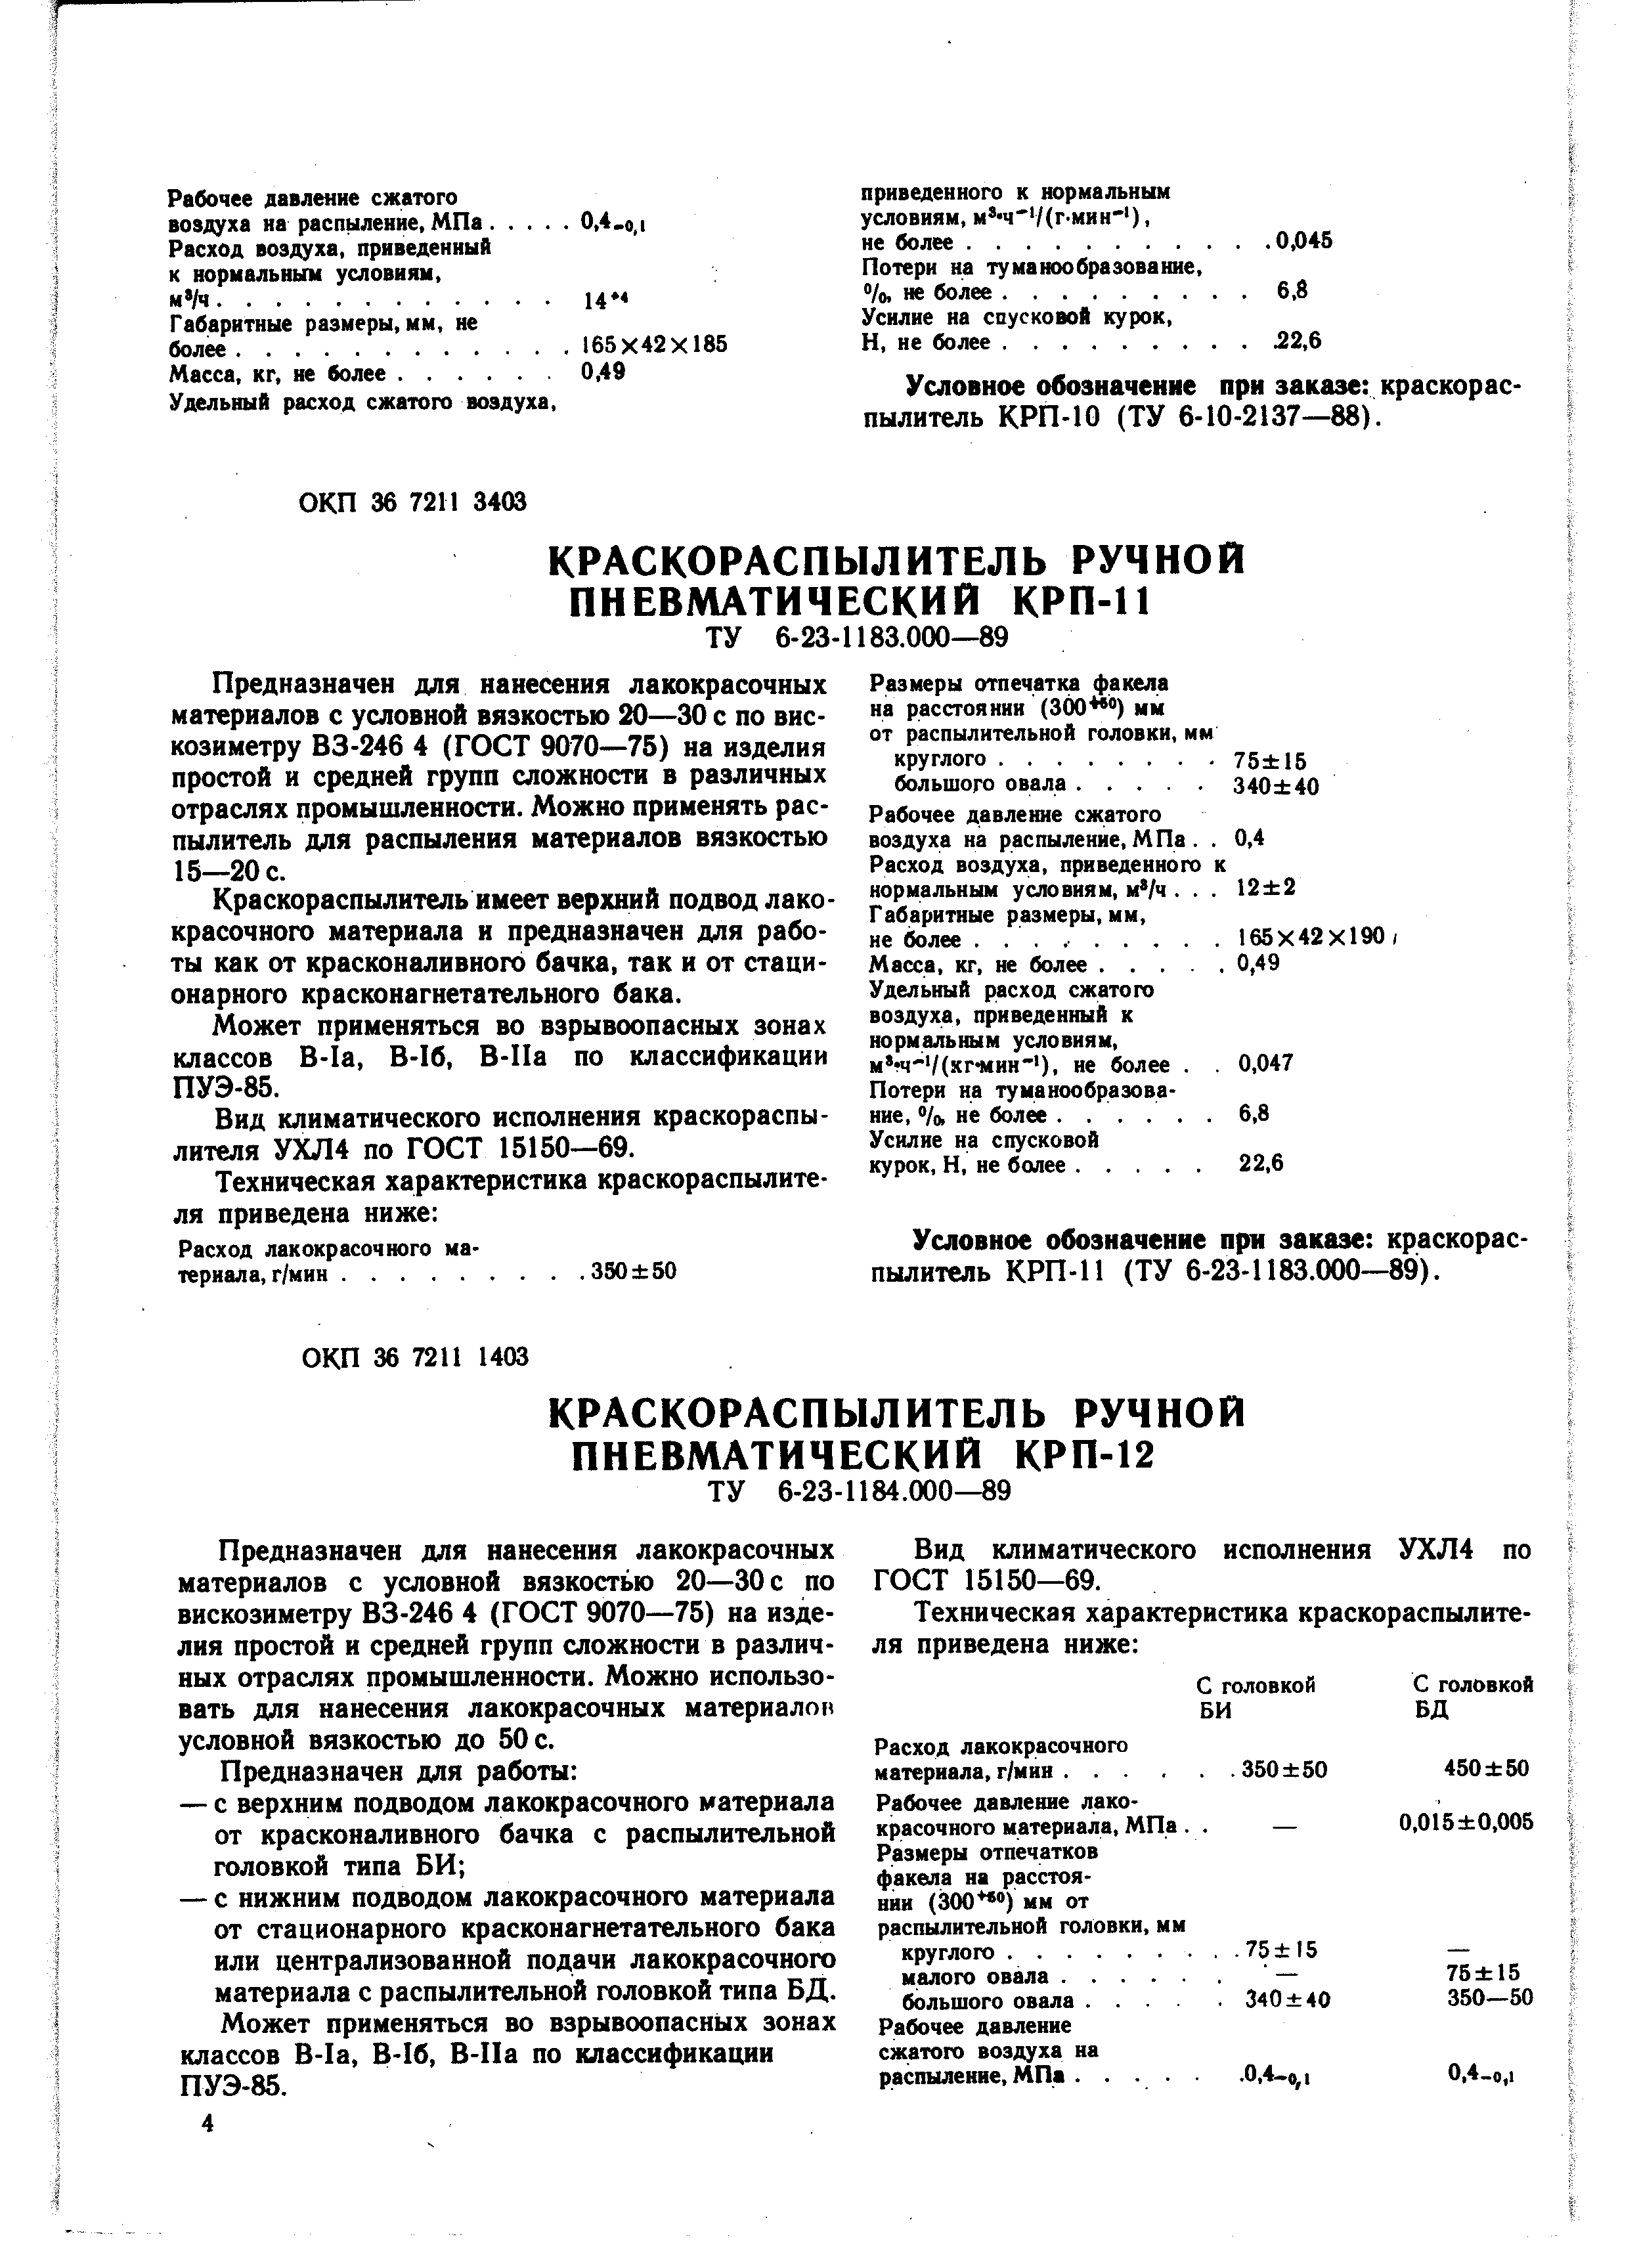 Условное обозначение при заказе краскораспылитель КРП-10 (ТУ 6-10-2137—88).
